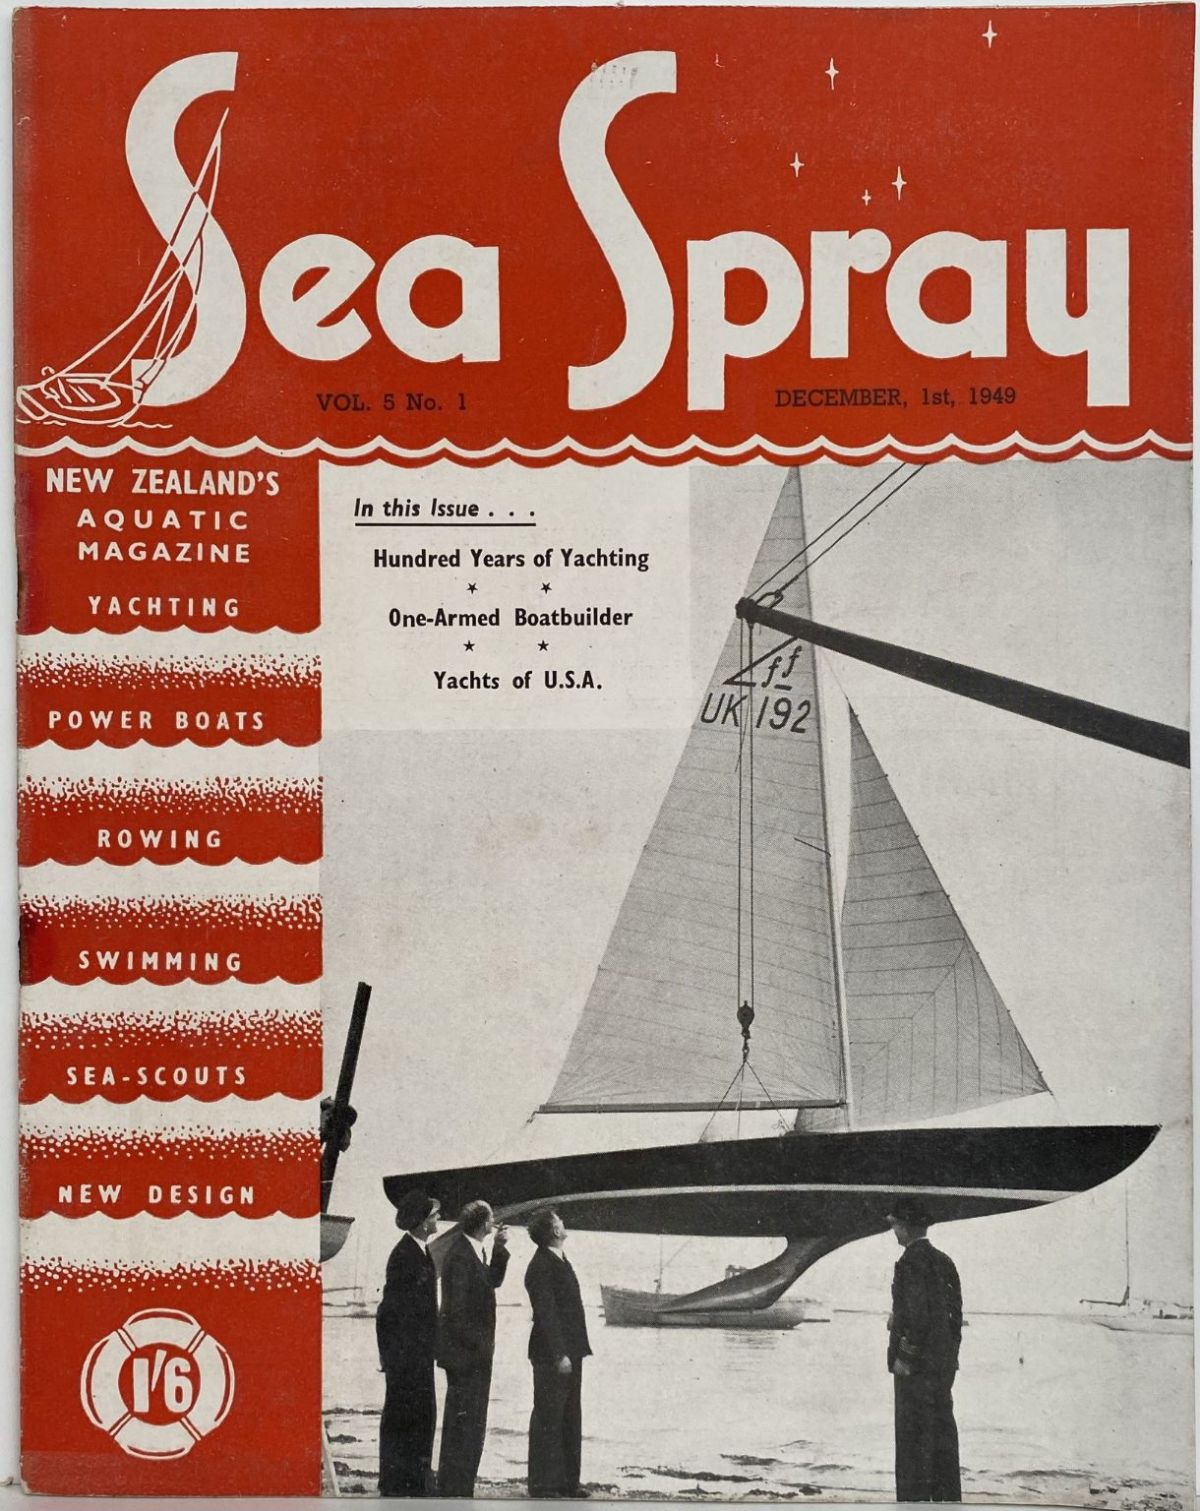 VINTAGE MAGAZINE: Sea Spray - Vol. 5, No. 1 - December 1949